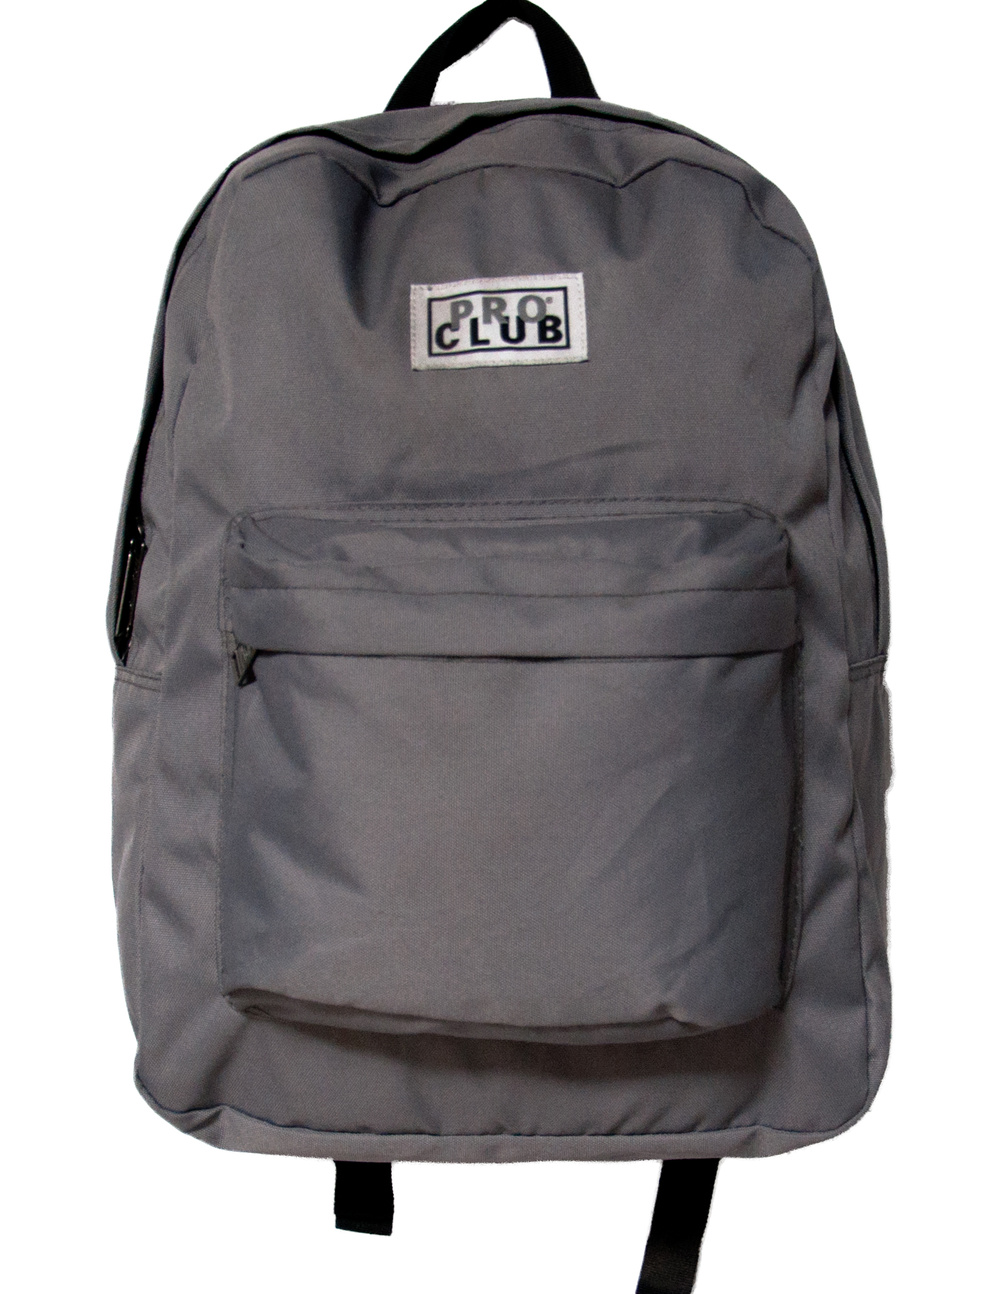 club travel backpack